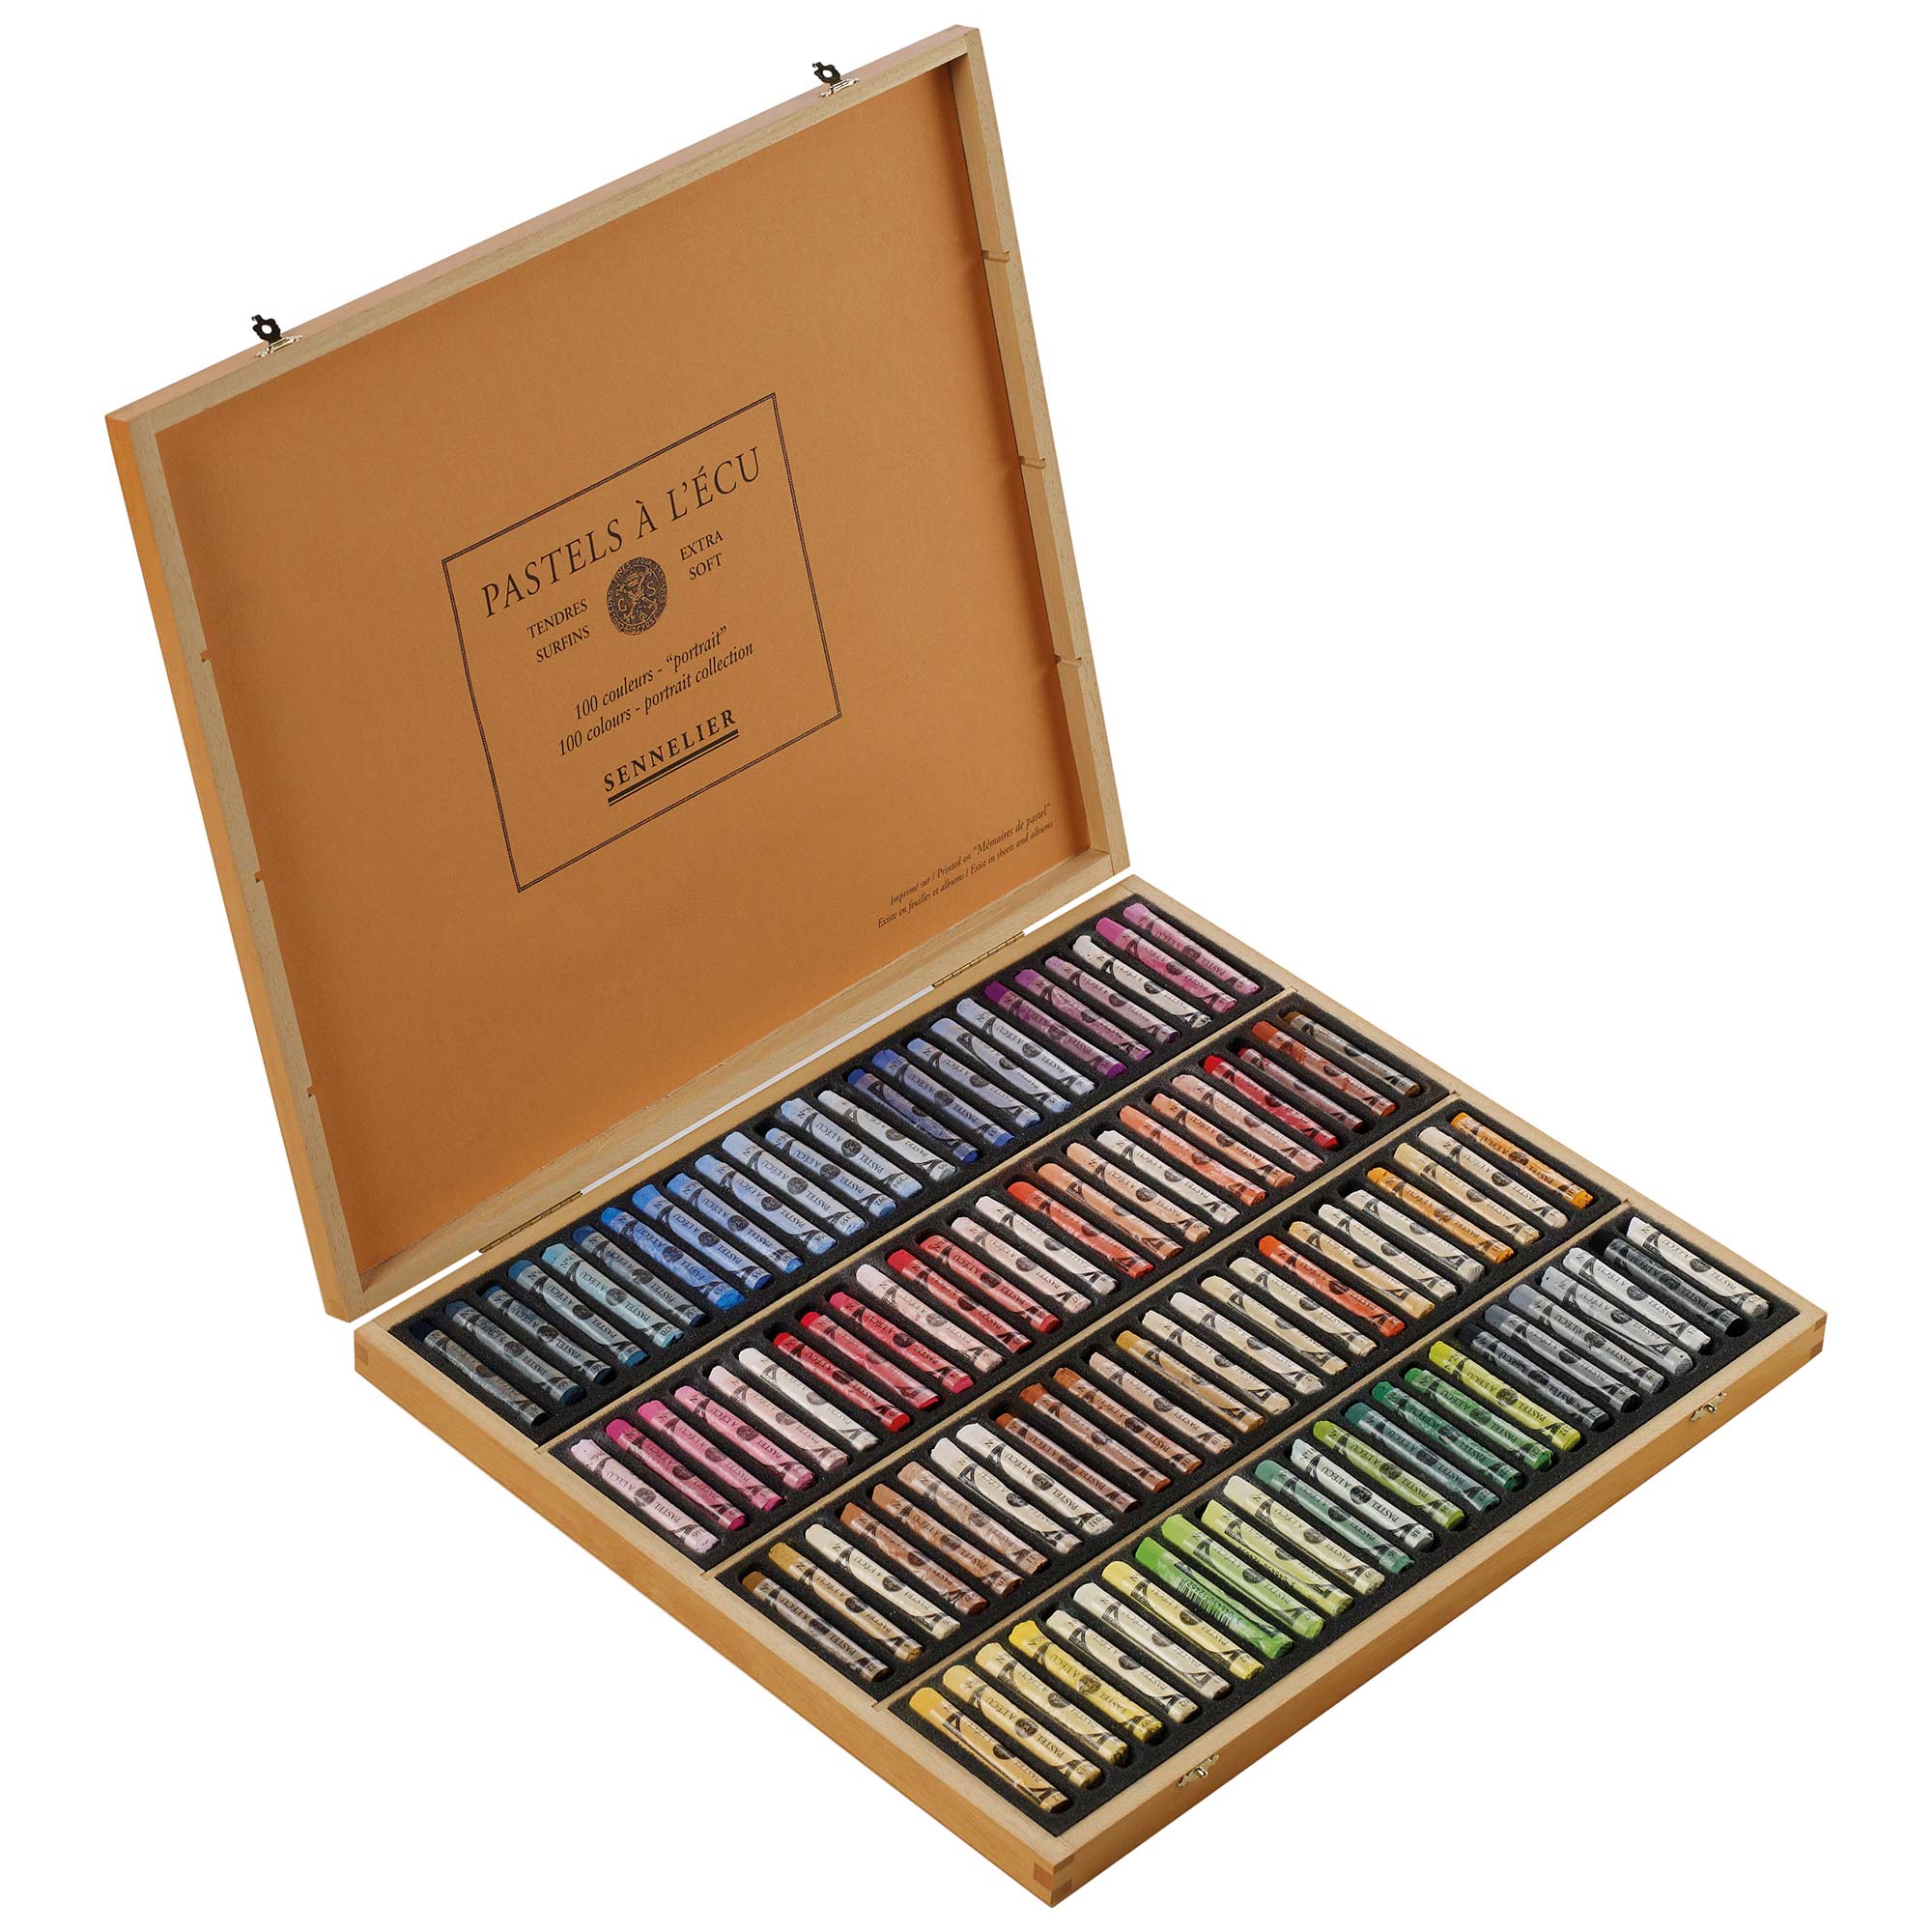 Sennelier Soft Pastel Selections Wooden Box Set - Portrait Set of 100